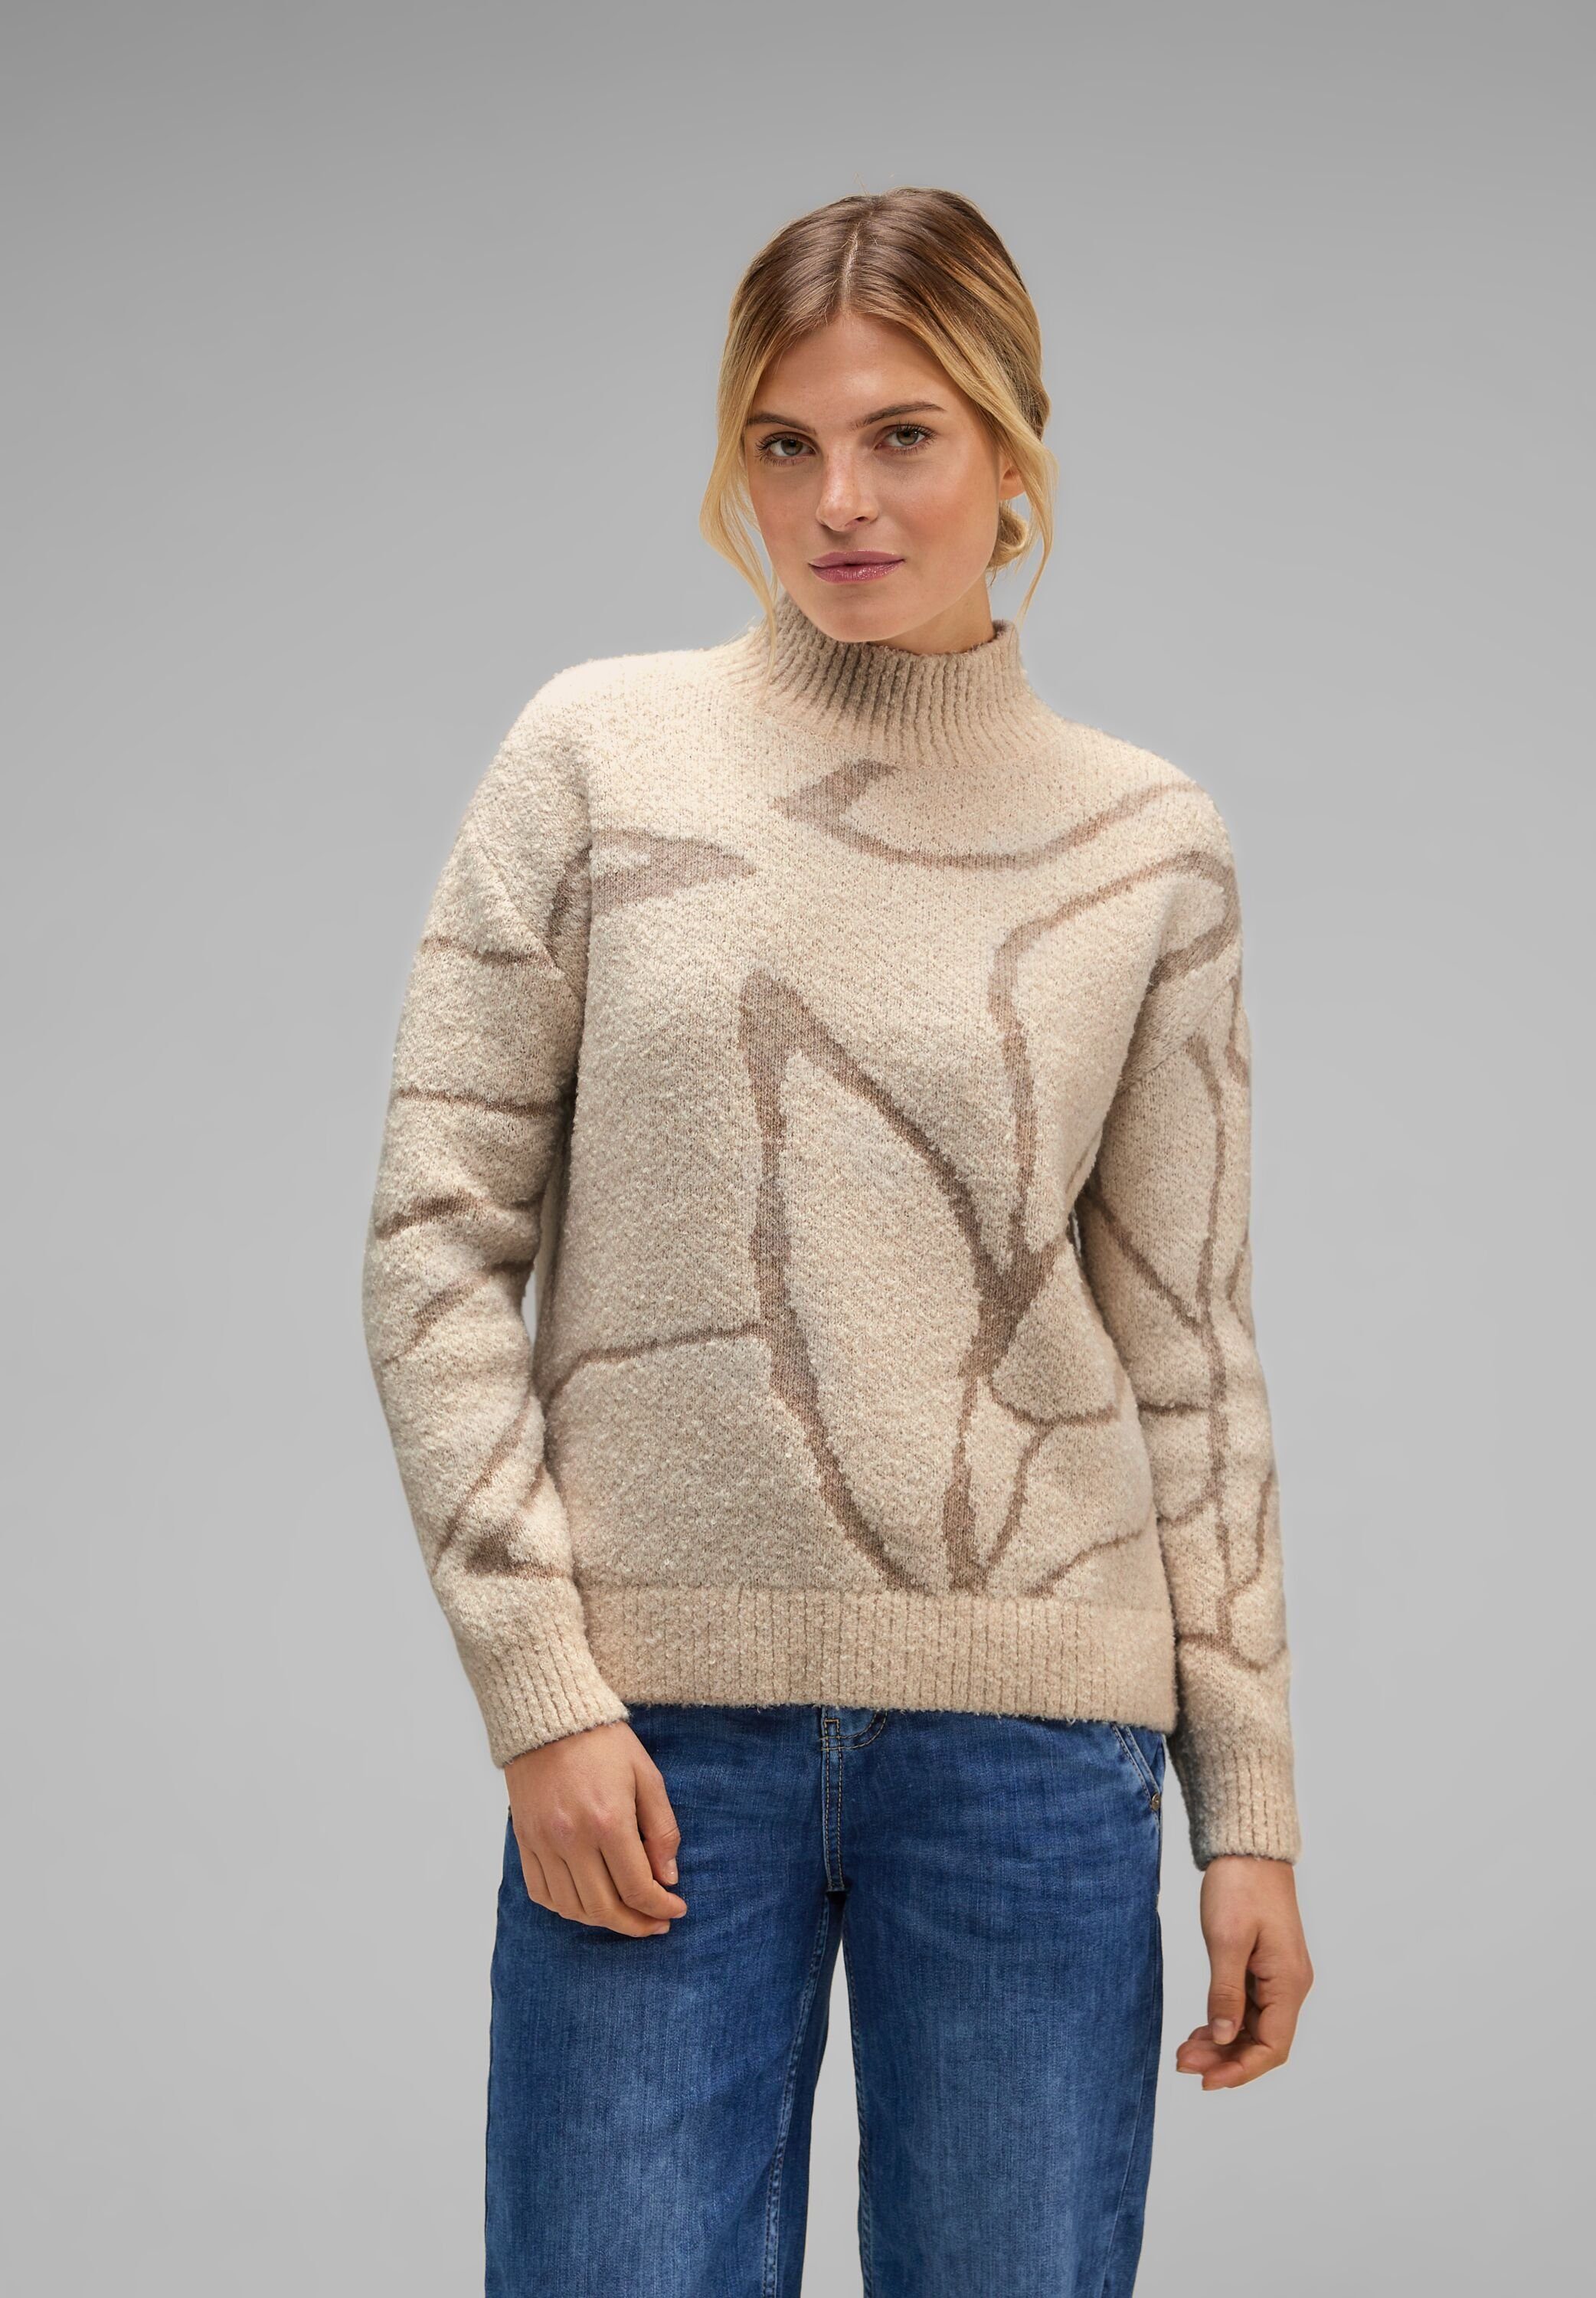 ONE Boucle lucid white Dessin Sweater STREET mit Stehkragen Strickpullover